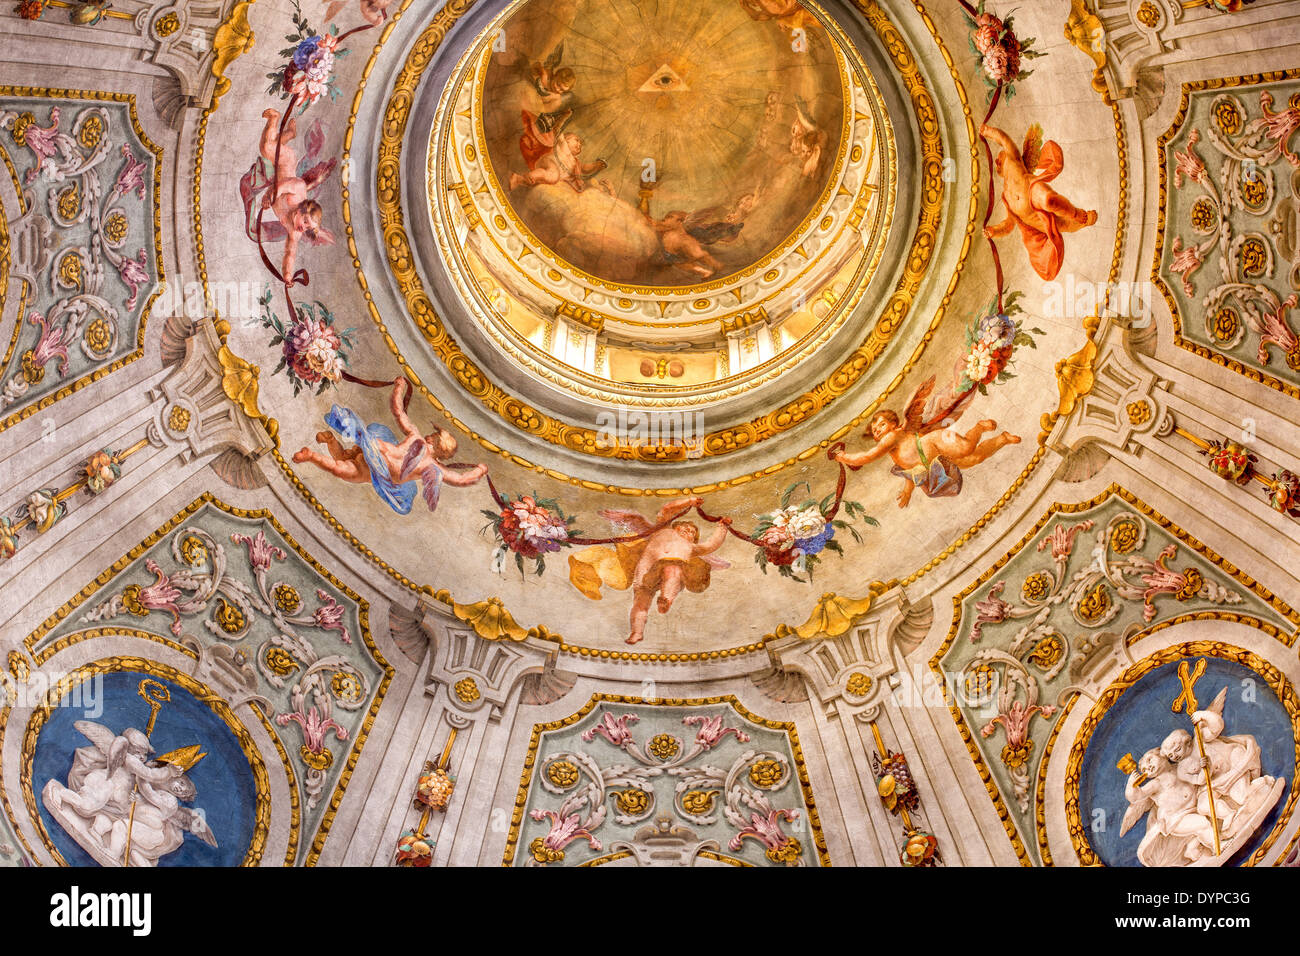 Des peintures au plafond dans une église de Finale Ligure, Italie, UNION EUROPÉENNE Banque D'Images